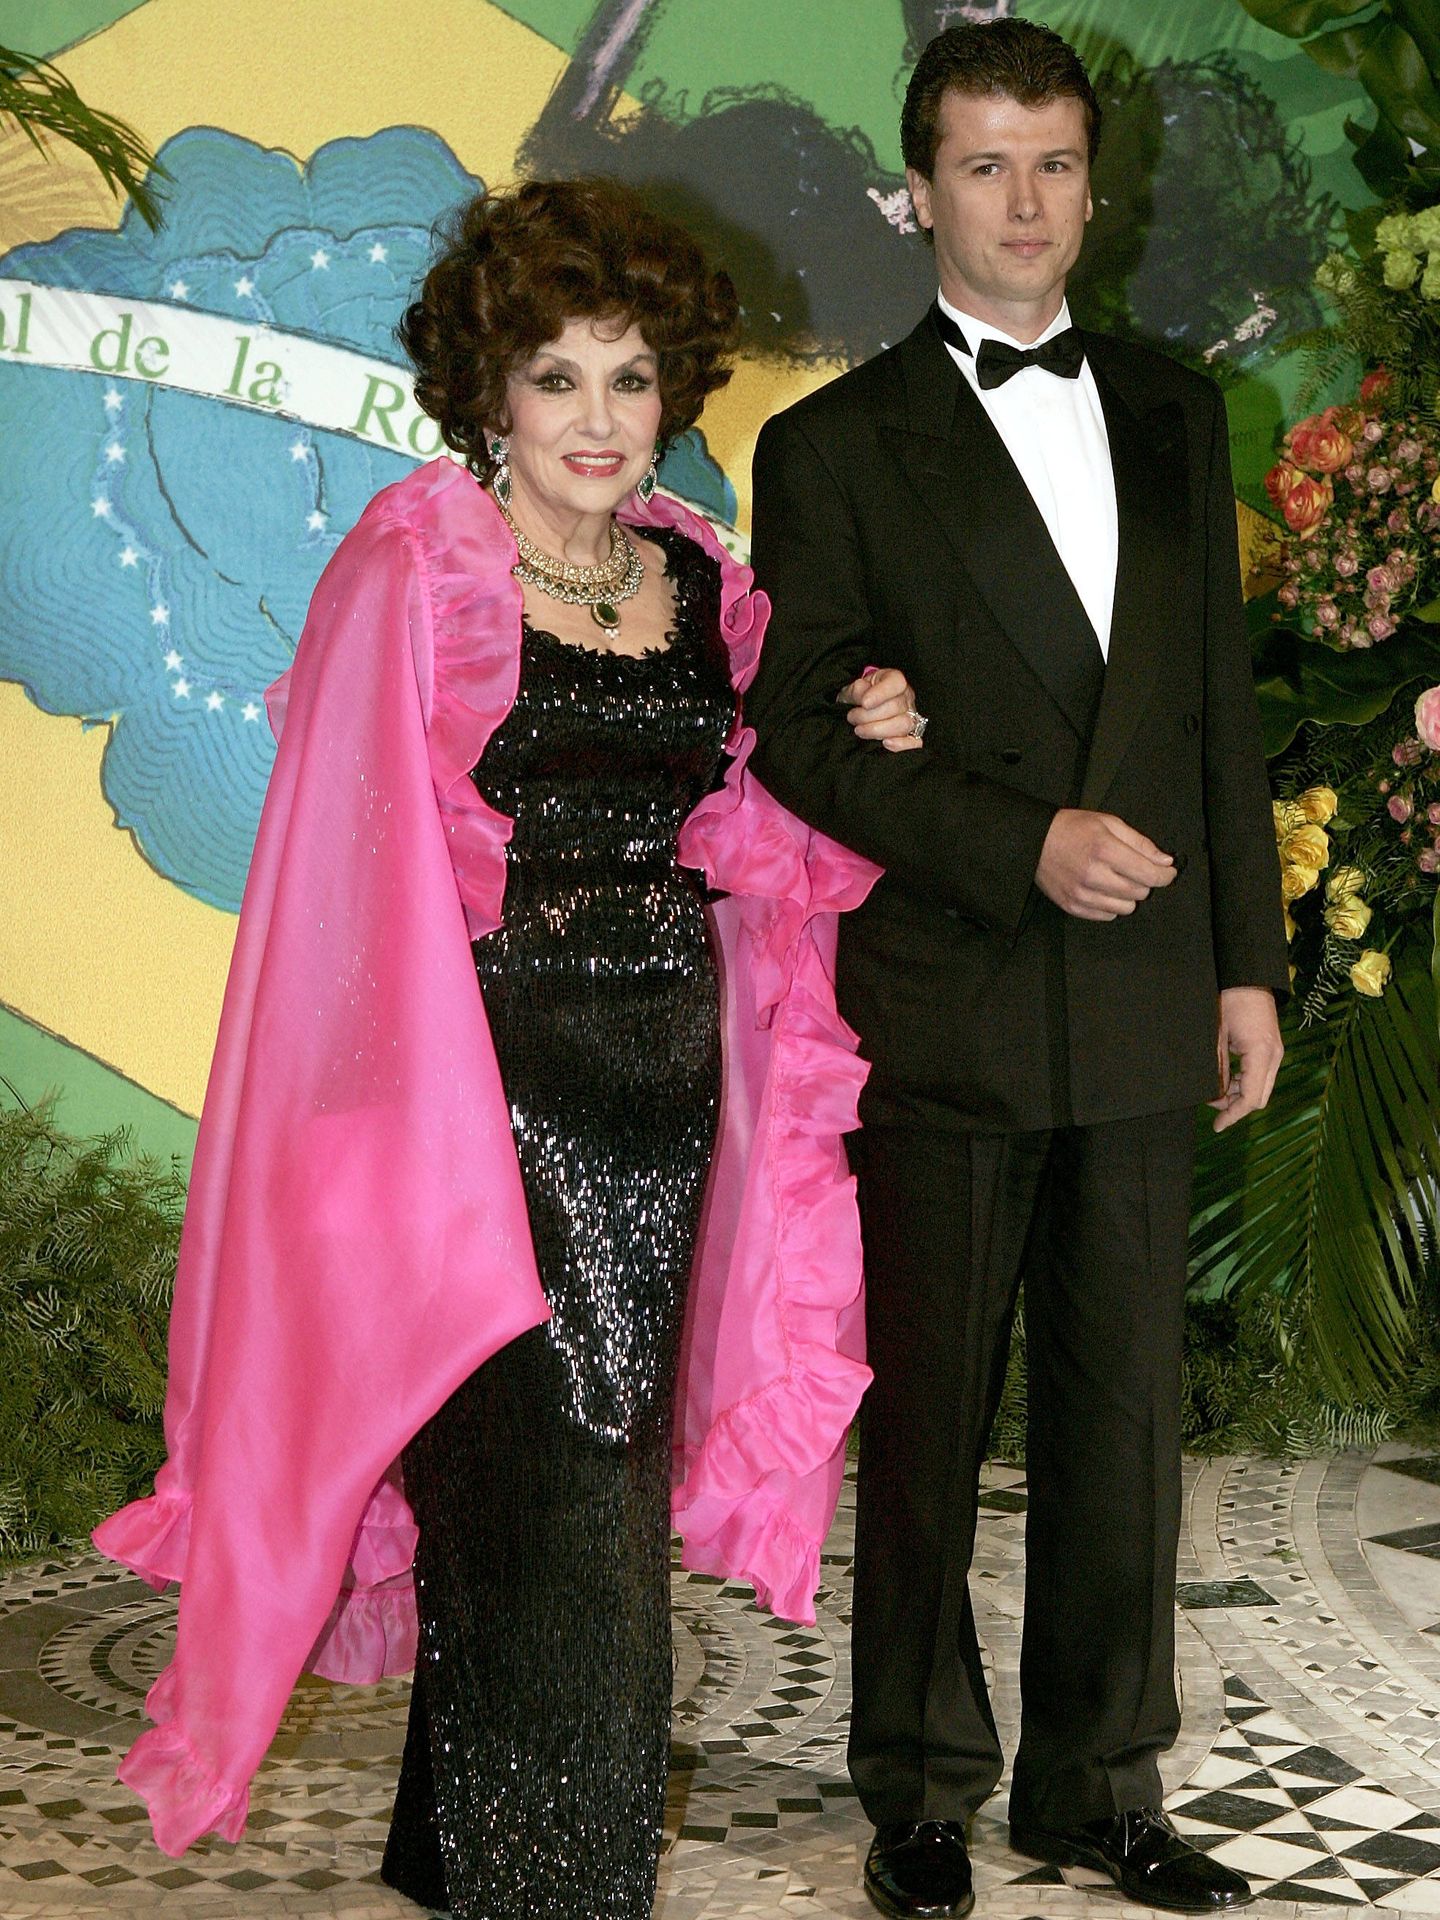 Gina Lollobrigida y Javier Rigau, en el Baile de la Rosa de 2005. (Getty)